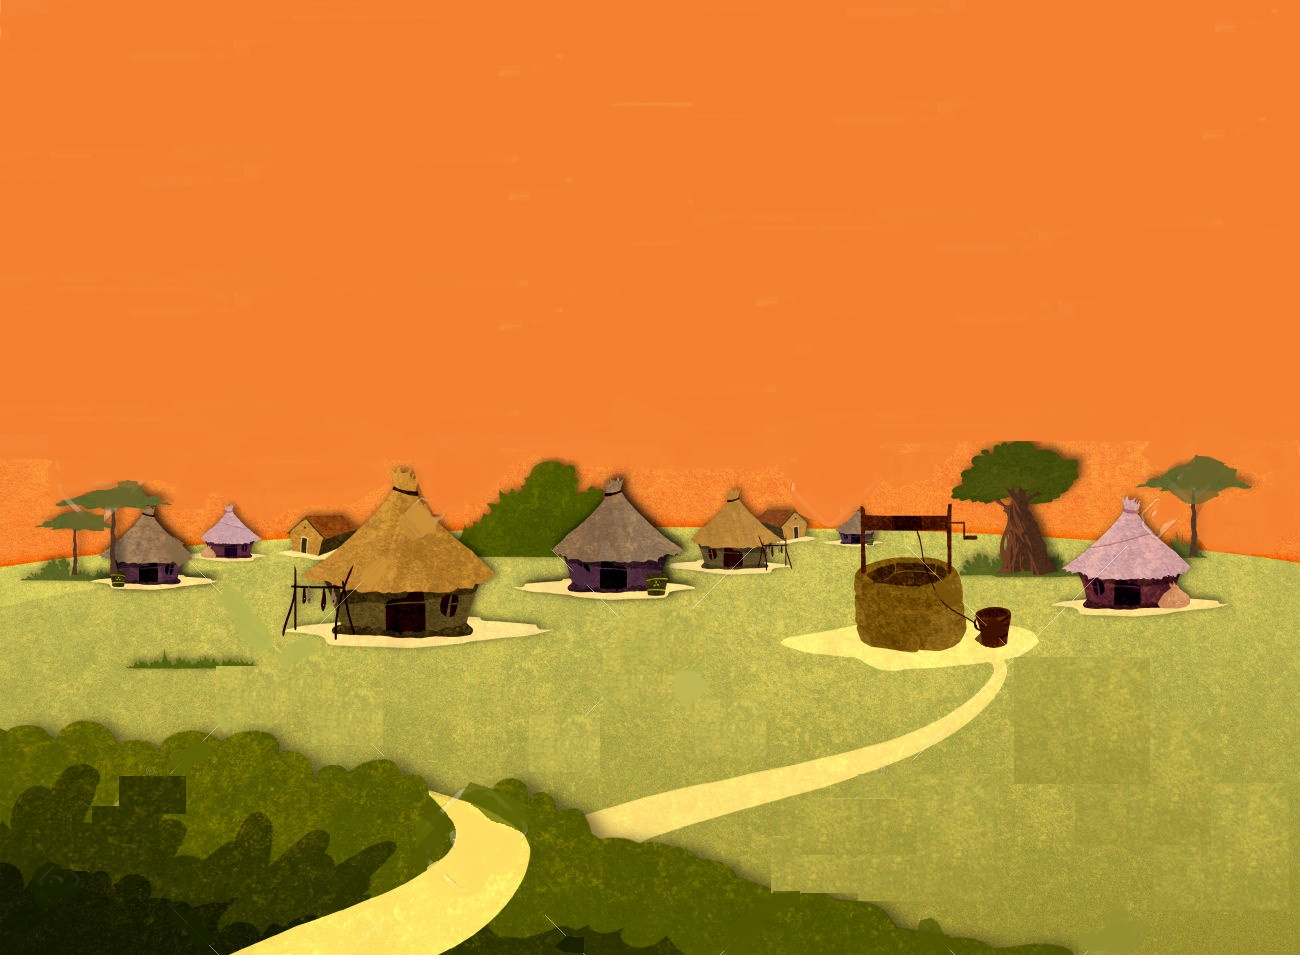 villaggio africano